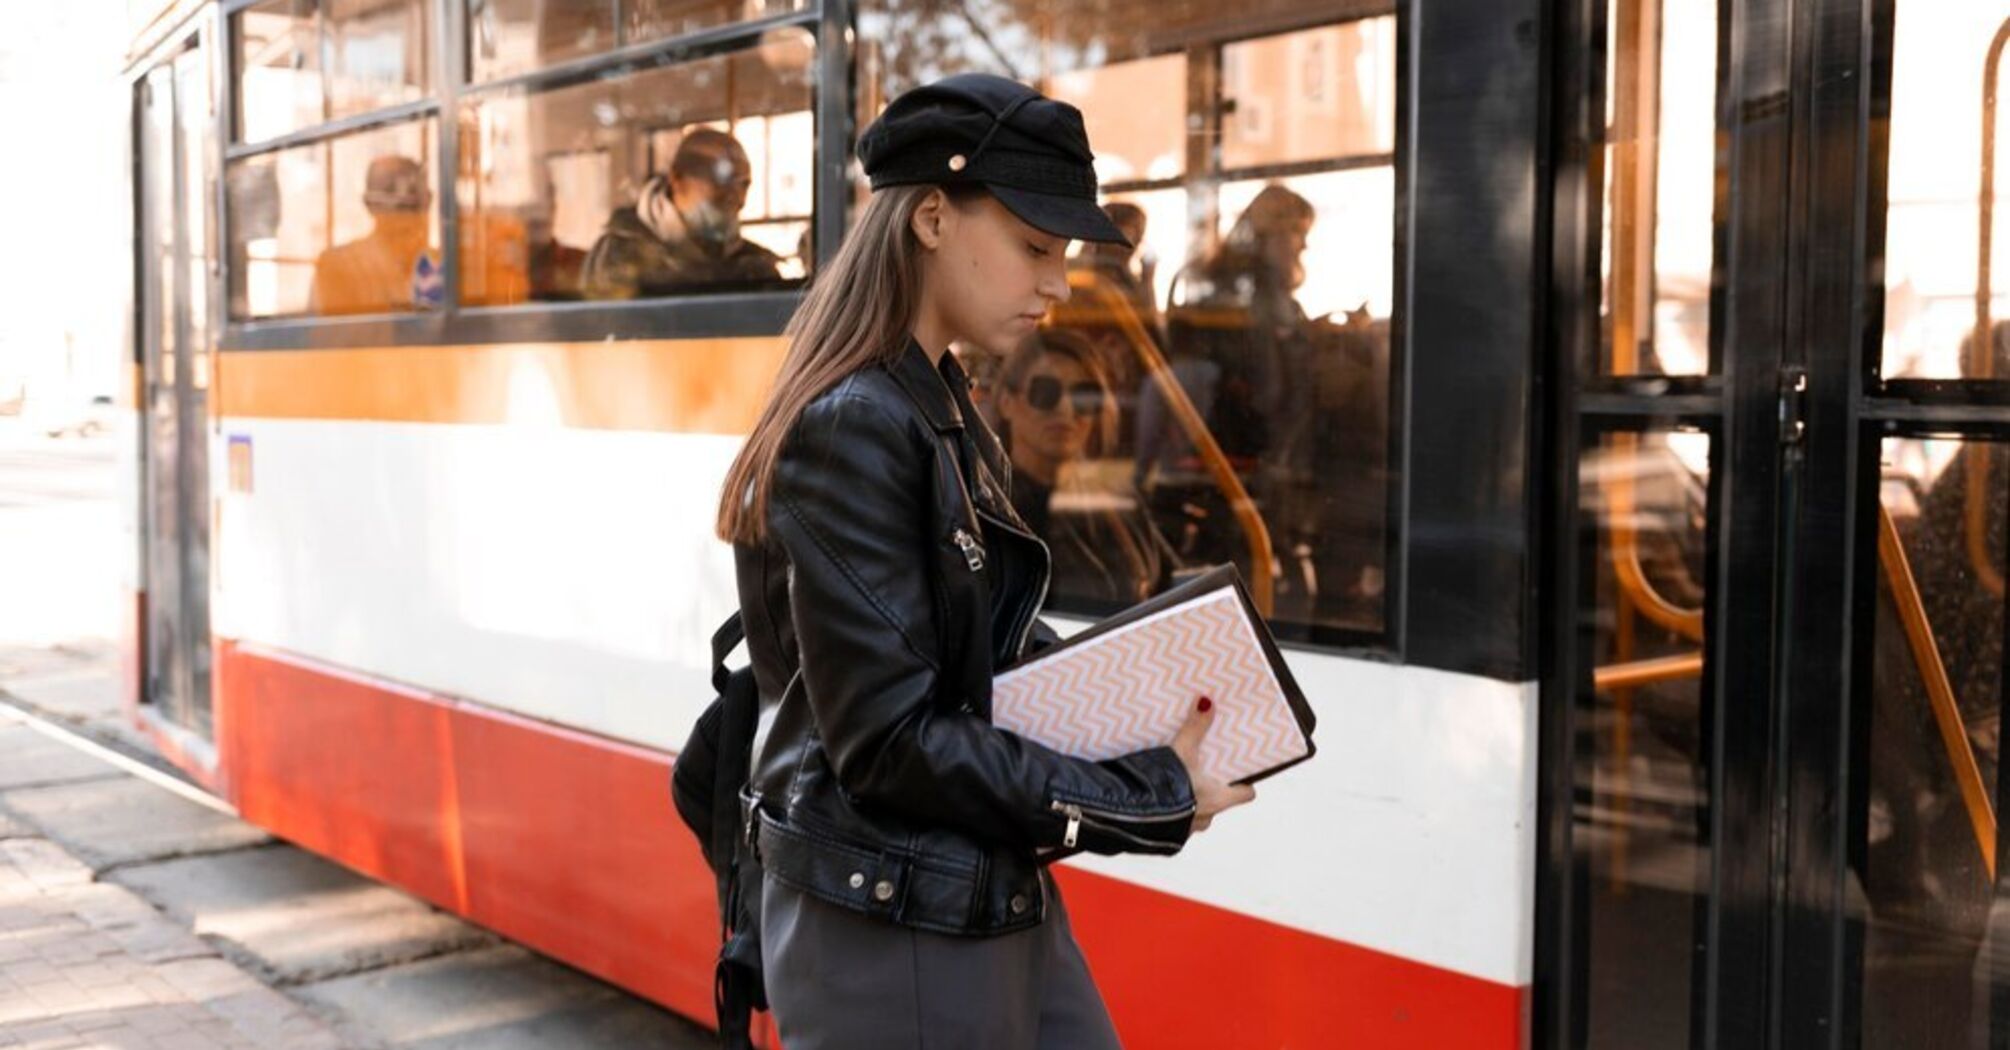 Paris plans to make major changes to public transport